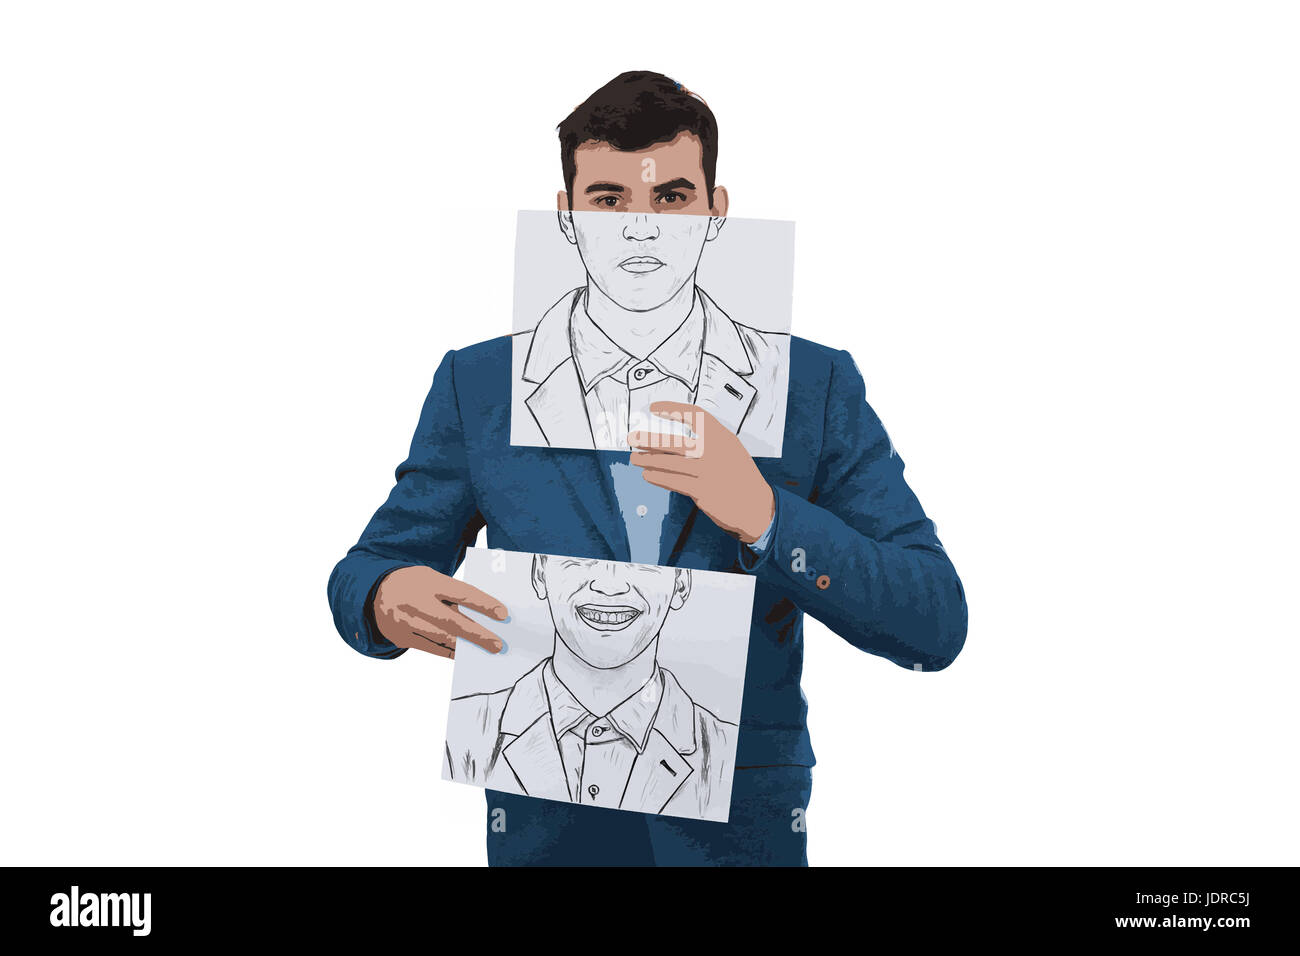 Illustration der Geschäftsmann hält zwei Papiere mit verschiedene Emotionen gezeichnet, ein Versteck halbe Gesicht mit wütenden Expressionon und ein weiteres mit einem glücklich fa Stockfoto